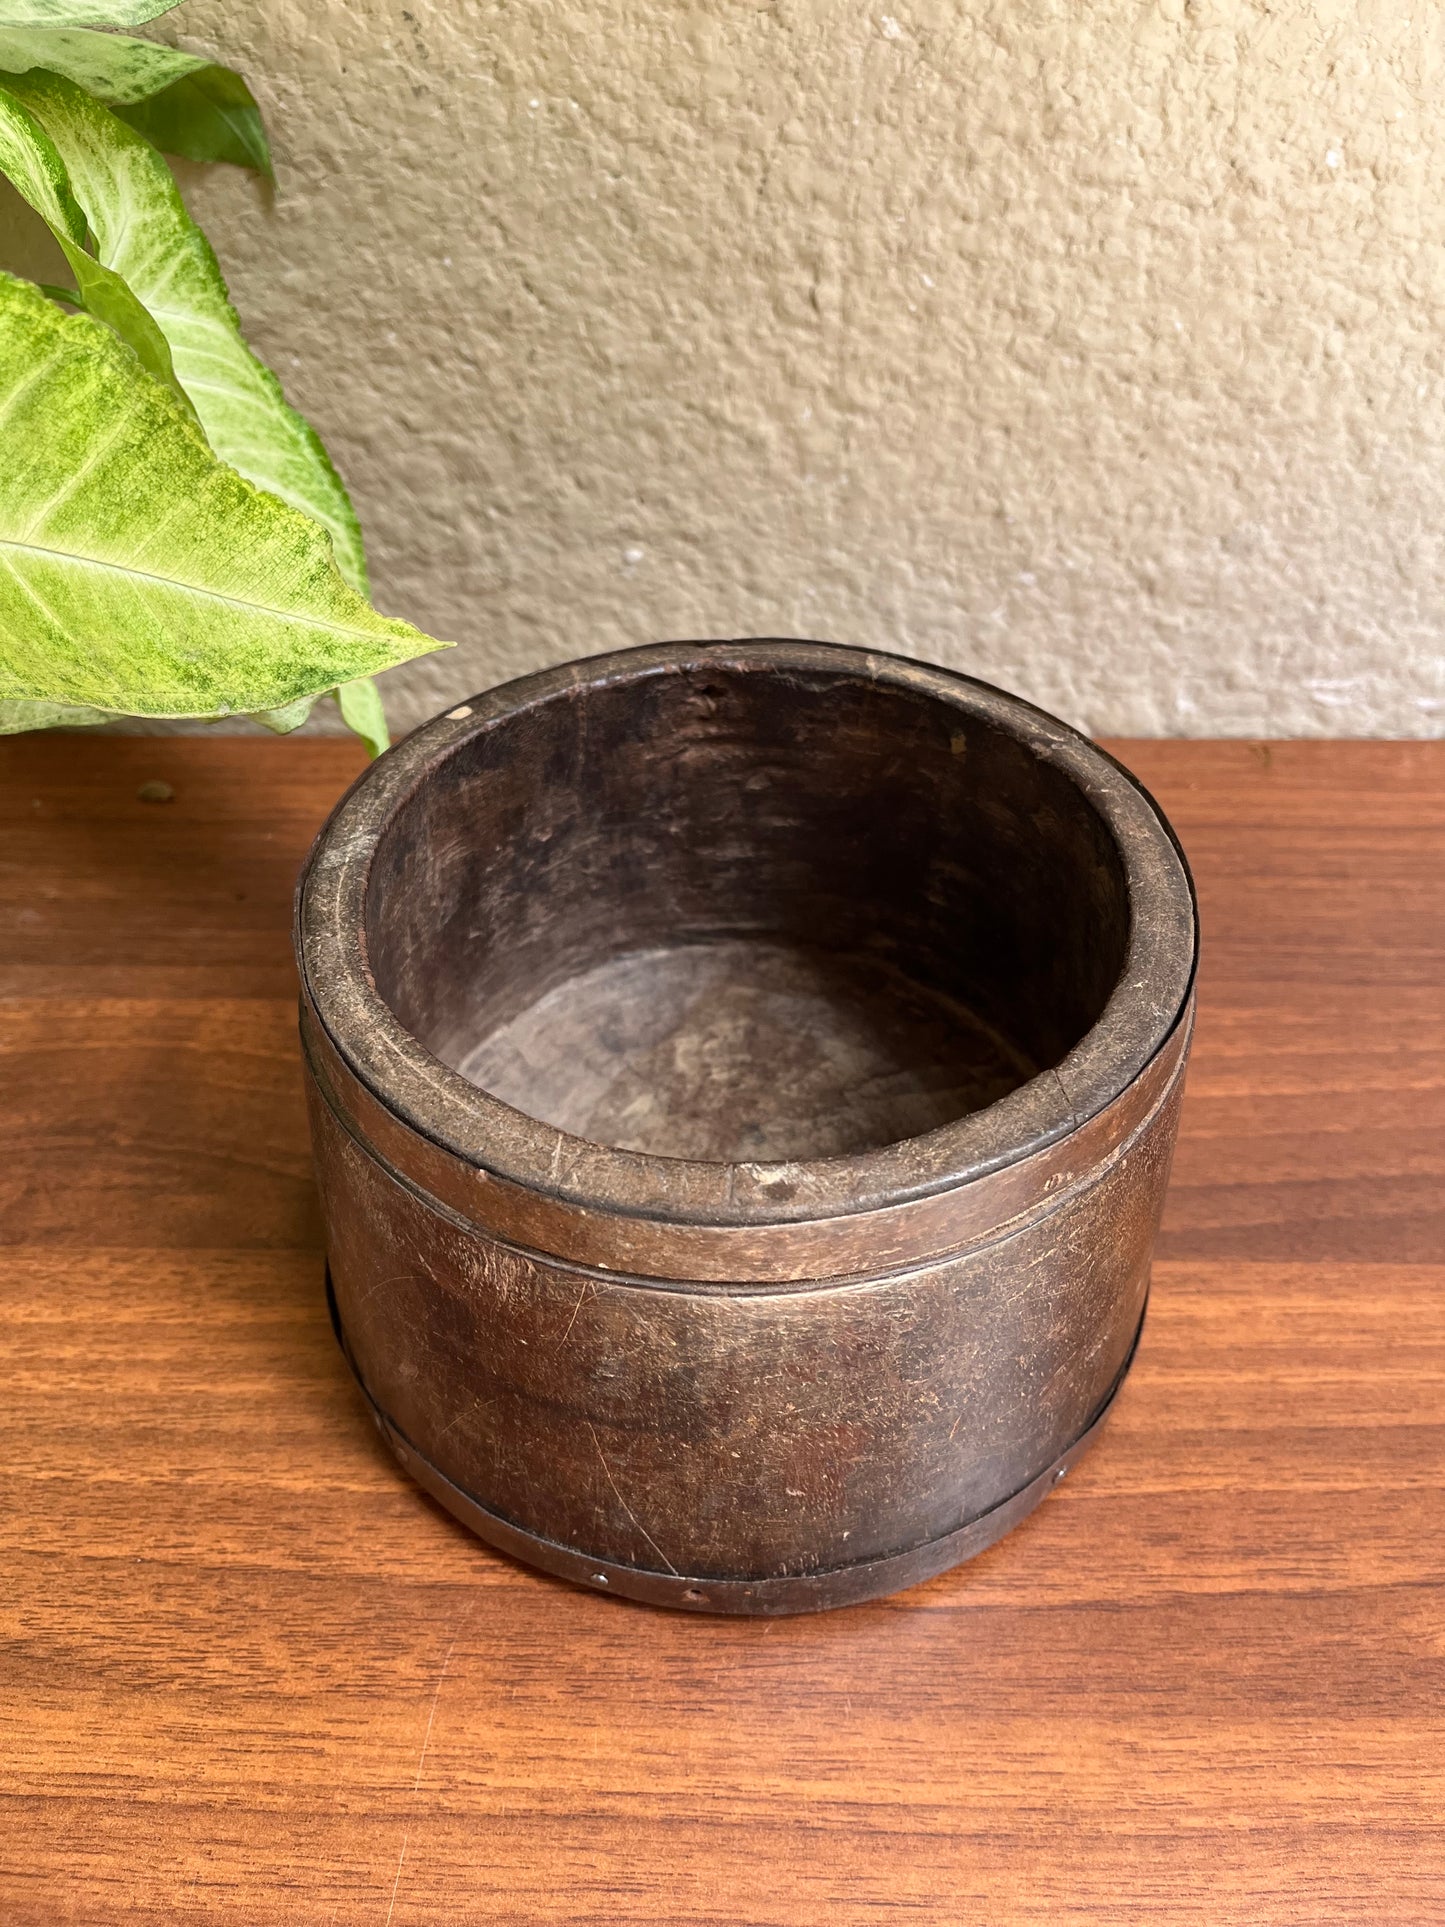 Vintage wooden Flower Pot